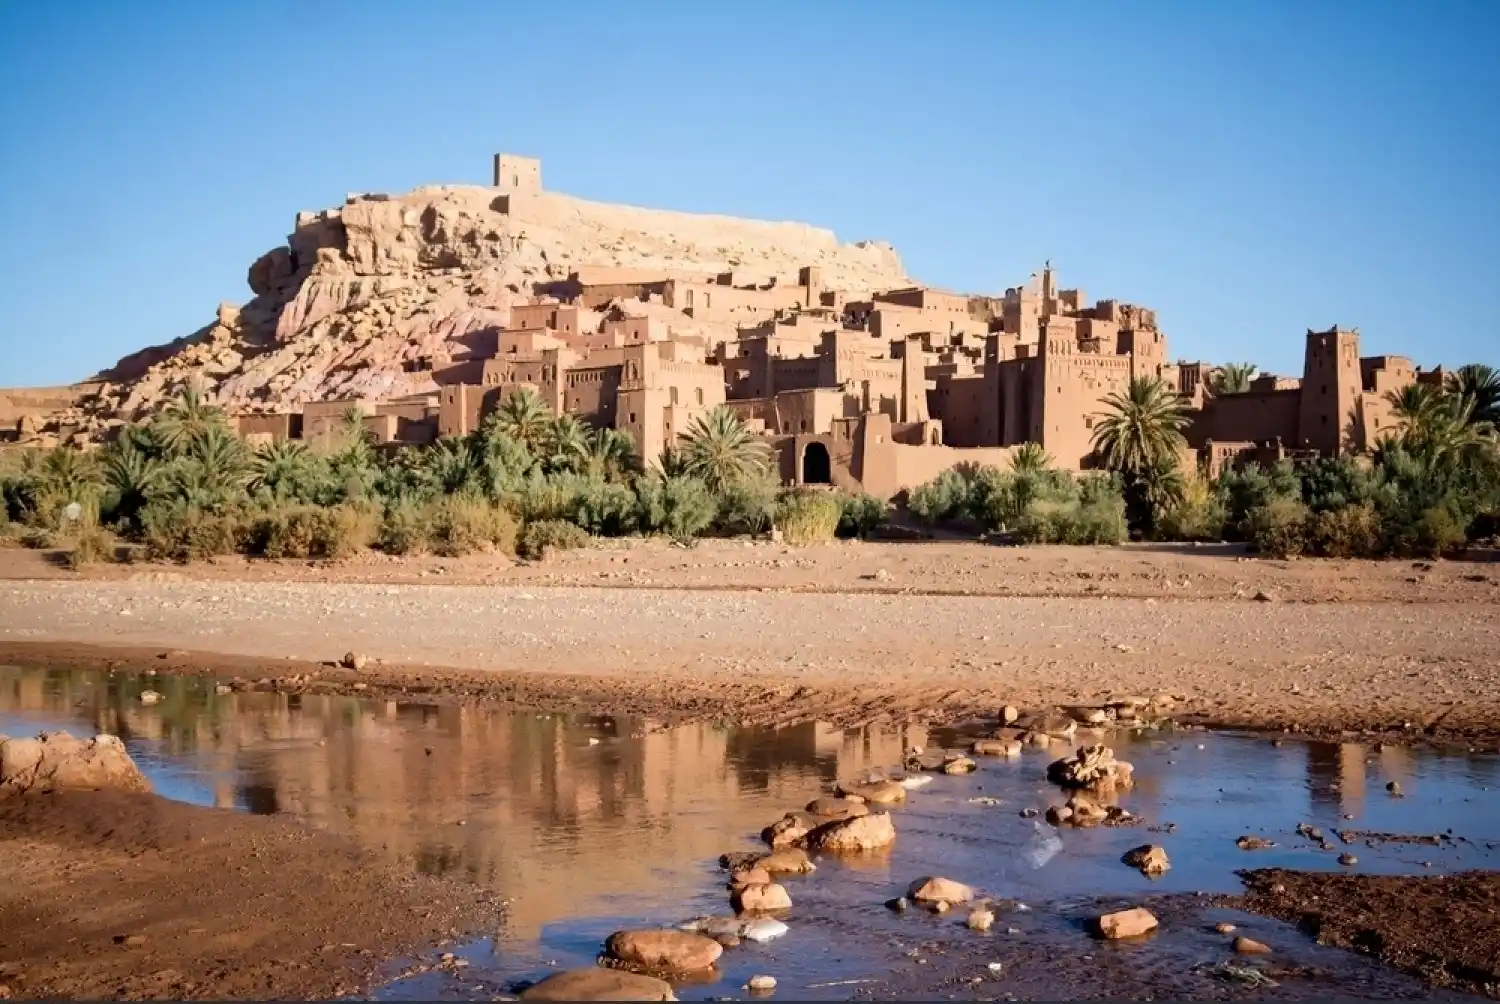 DAY 5 : Dades Gorges- Ouarzazate- Ait Ben Haddou - Marrakech city